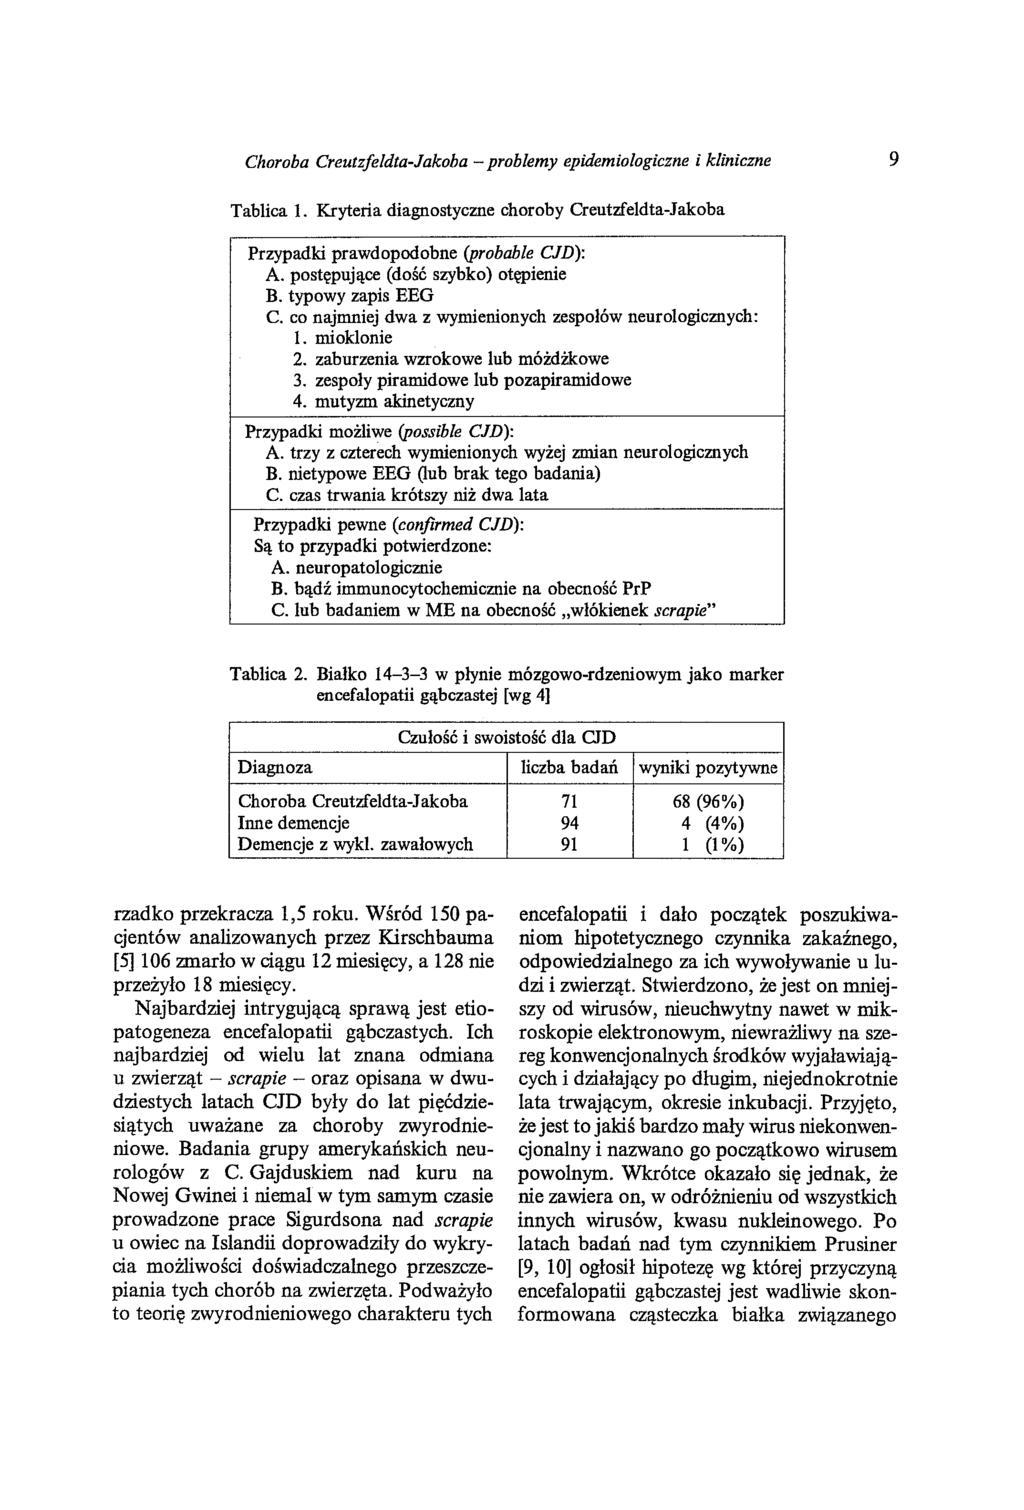 Choroba Creutzfeldta-Jakoba - problemy epidemiologiczne i kliniczne 9 Tablica 1. Kryteria diagnostyczne choroby Creutzfeldta-Jakoba Przypadki prawdopodobne (probabie CJD): A.